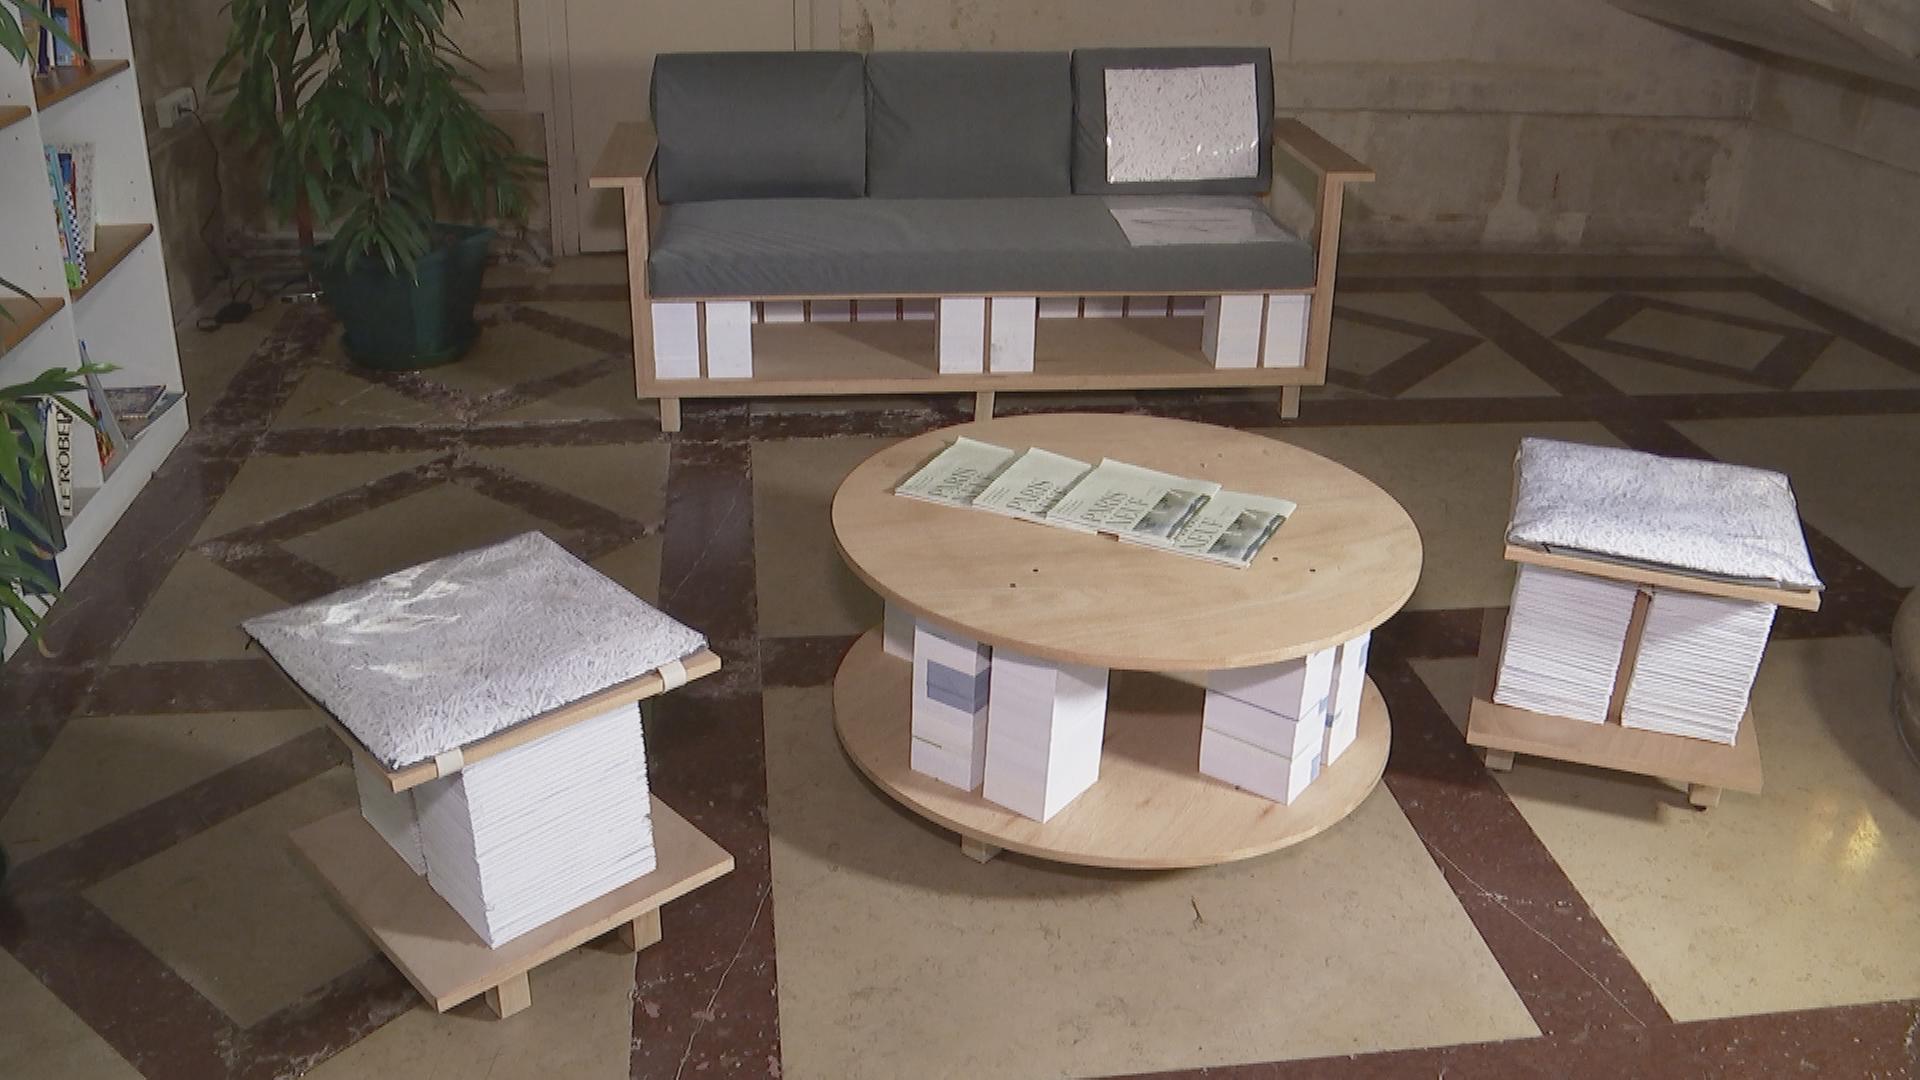 Paris: Möbel aus Wahlzettel